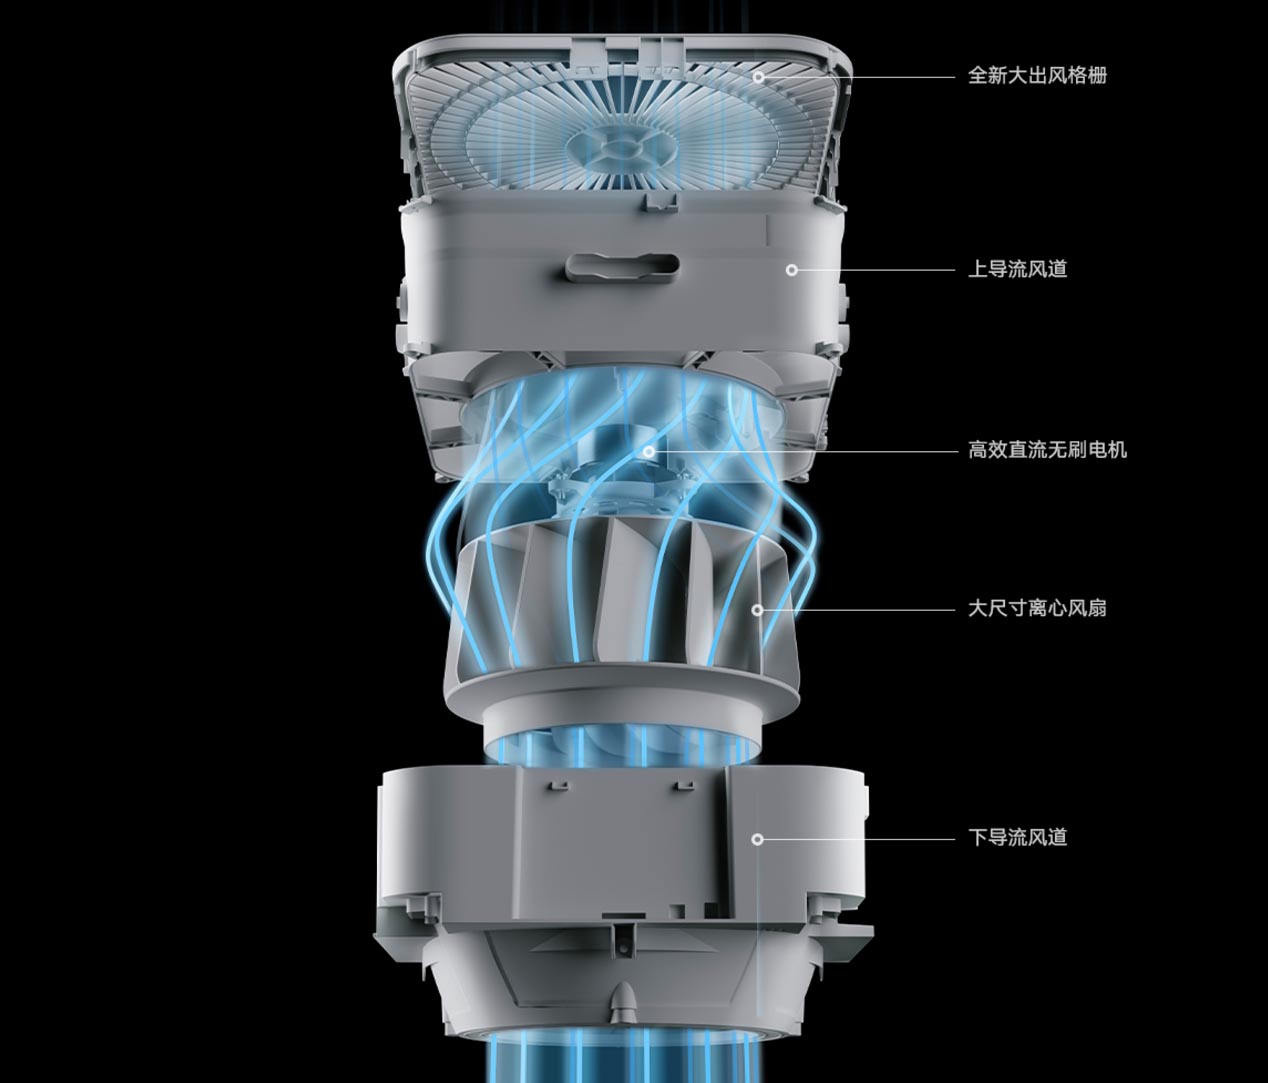 米家空气净化器Pro H发布:强力去除甲醛 10月9日正式开售